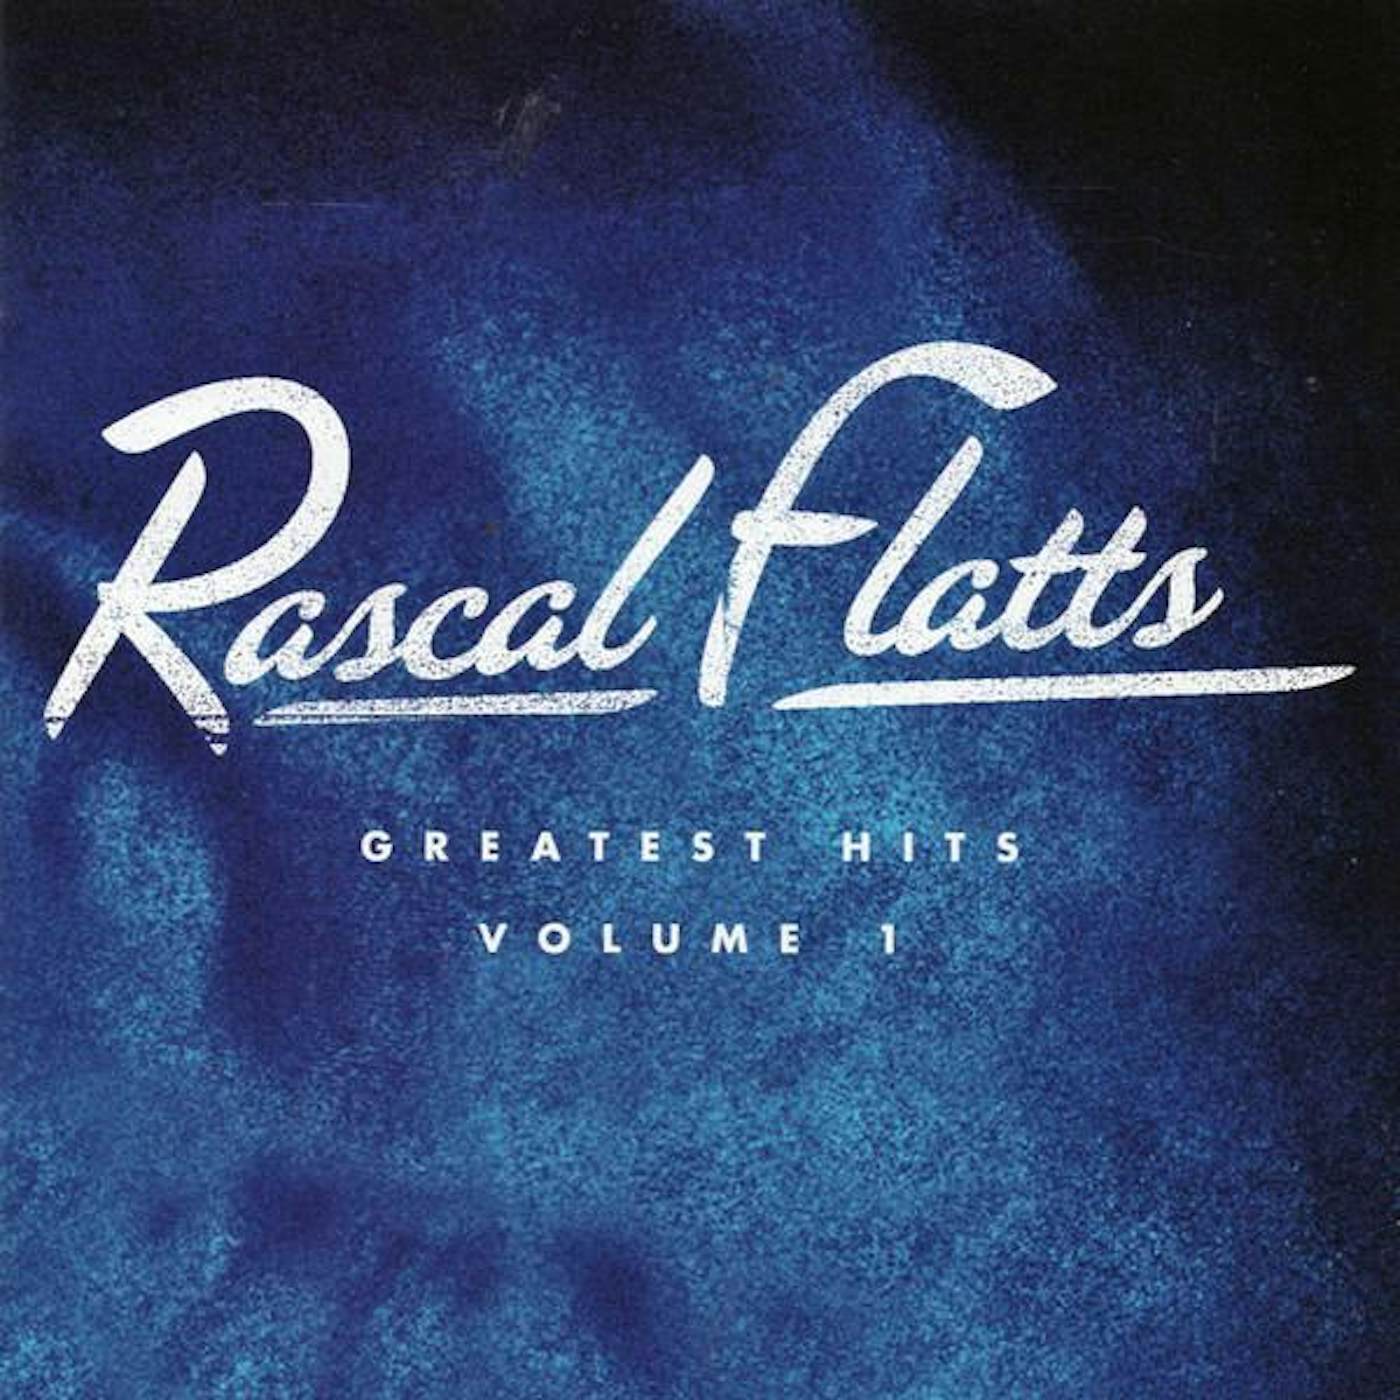 Rascal Flatts GREATEST HITS VOLUME 1 CD